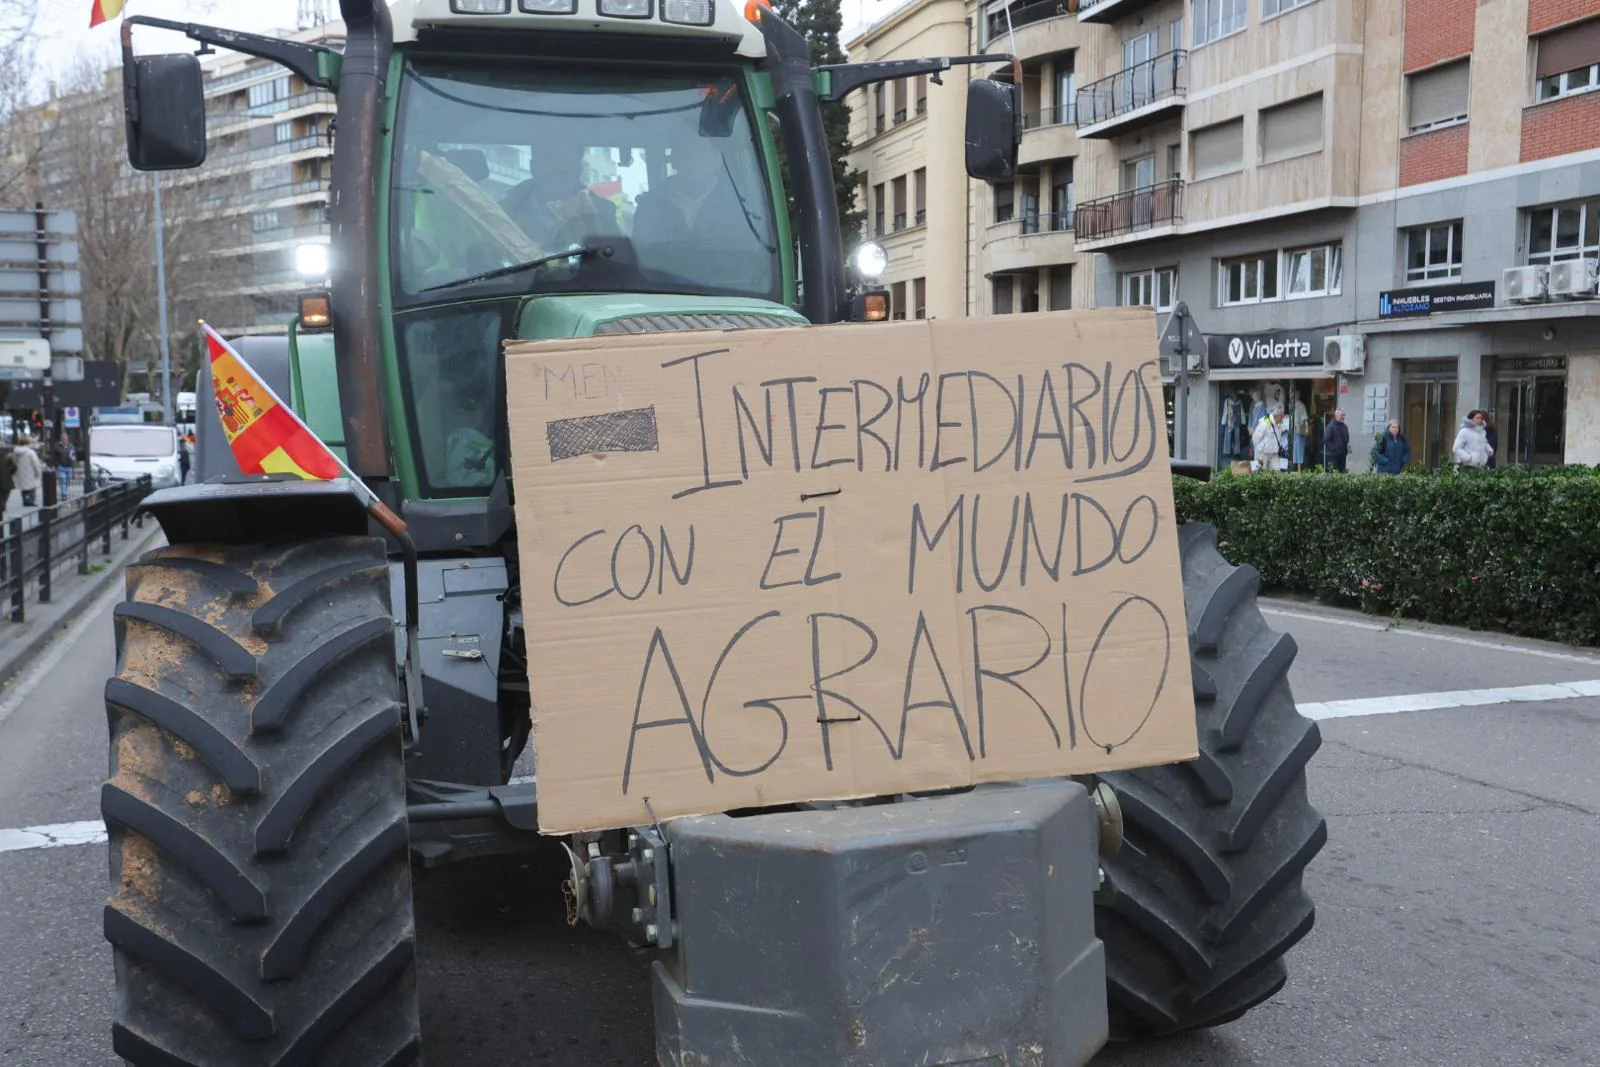 La tractorada de este jueves en Salamanca, en imágenes